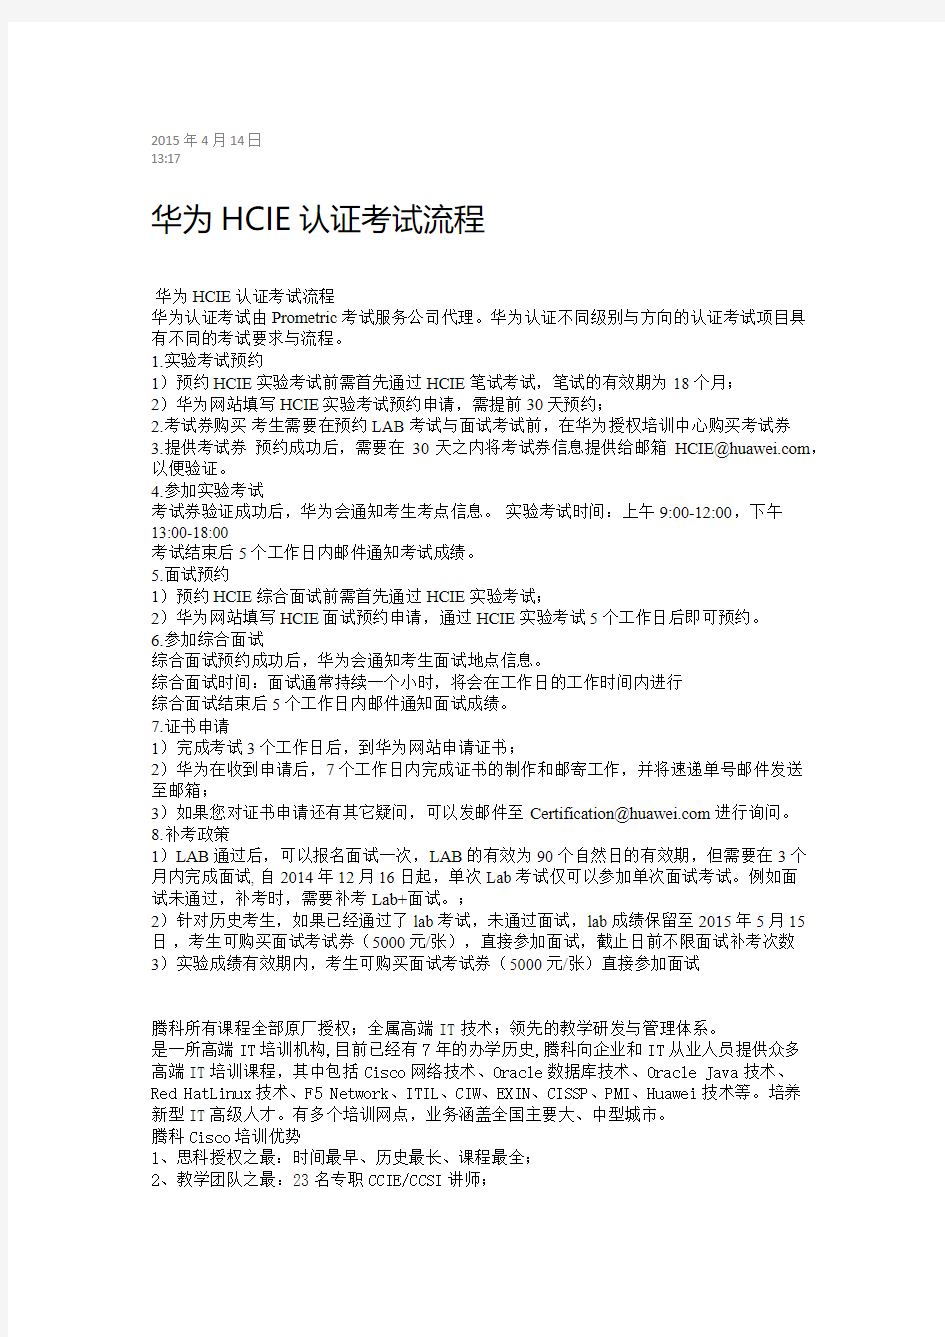 杭州腾科-华为HCIE认证考试流程